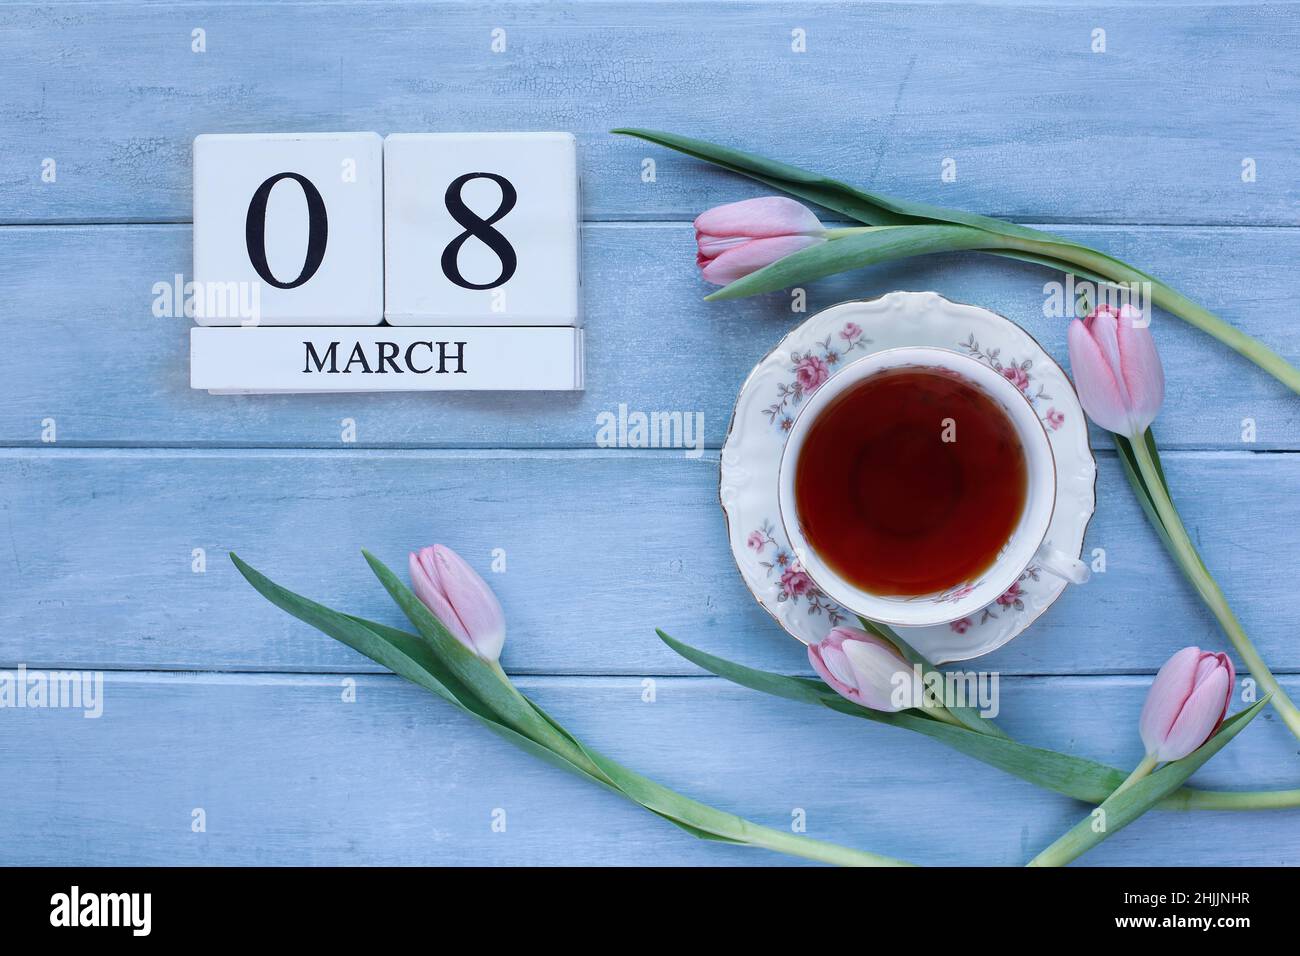 Des blocs de calendrier en bois blanc avec la date du 08 mai et des fleurs de tulipe roses avec du thé sur fond de bois bleu pour la Journée des femmes. Banque D'Images